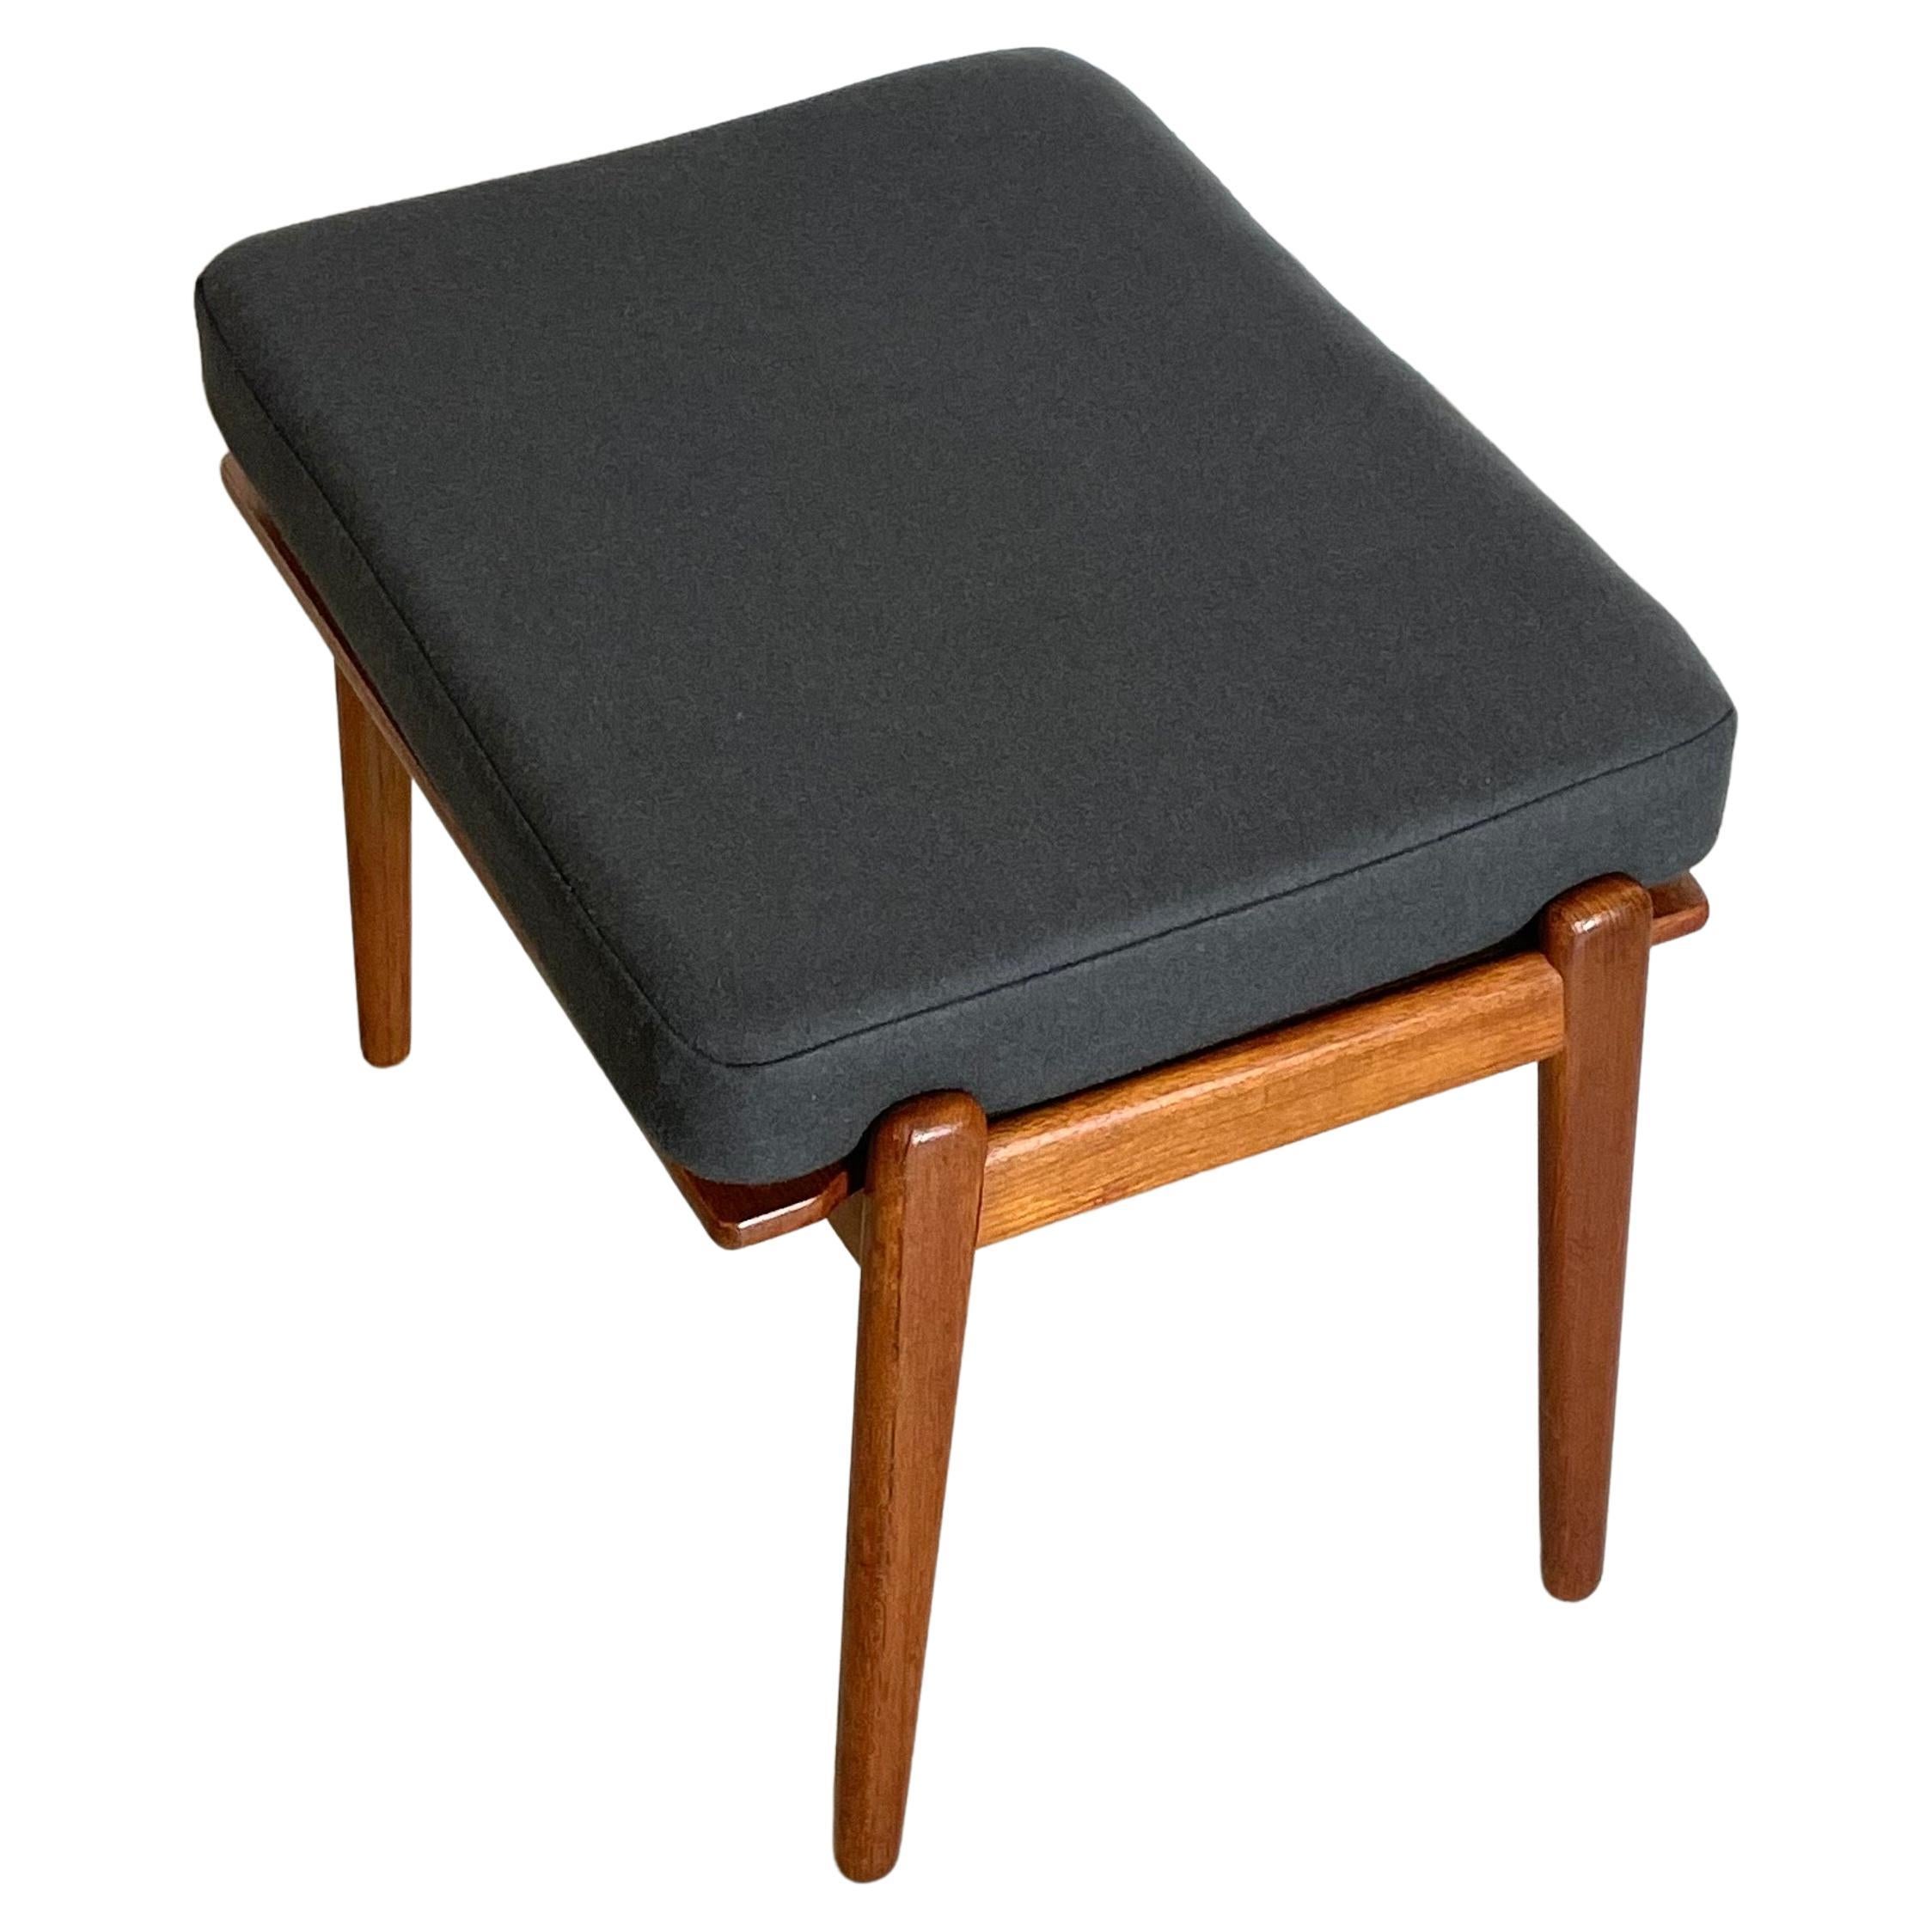 Rare Easy Chair modèle 563, conçu par Frederik Kayser pour Vatne en Norvège dans les années 1950. Restauré et équipé de nouveaux coussins d'assise dans une élégante housse déhoussable, en 100% laine vierge.

Dimensions : 75 x 66 x 79 cm : 75 x 66 x